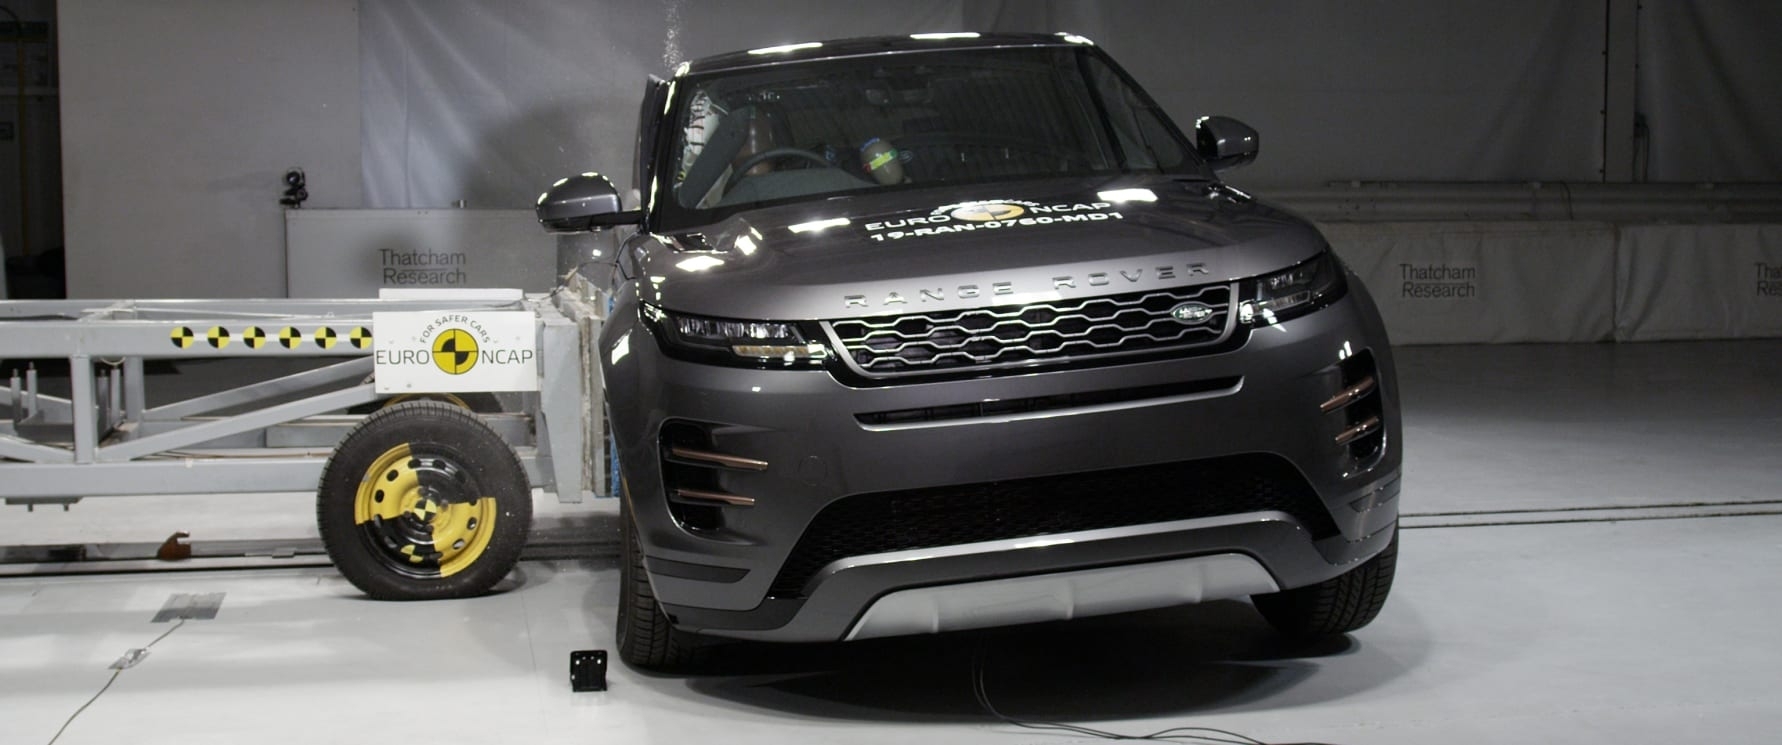 Range Rover Evoque Side Crash Test April 2019